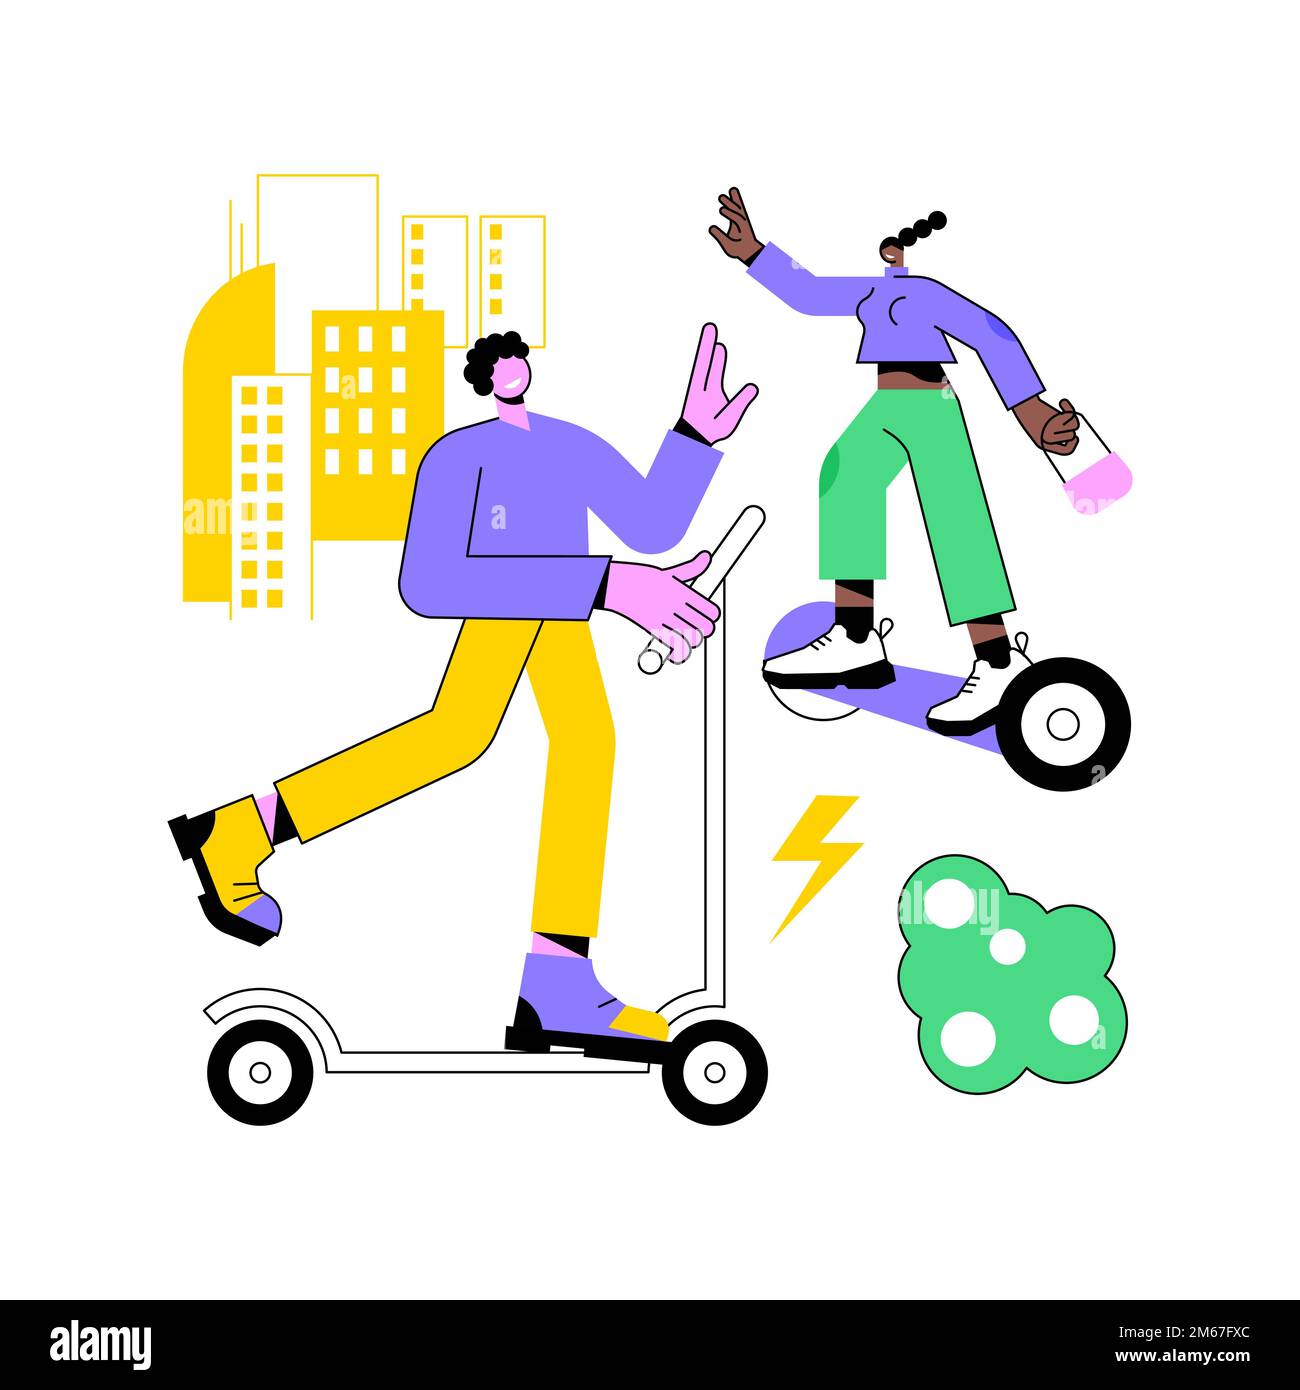 Illustrazione vettoriale del concetto astratto di trasporto elettrico urbano. Noleggio bici elettriche, escooter eskateboard utilizzando, stile di vita della città moderna, mobili urbani Illustrazione Vettoriale